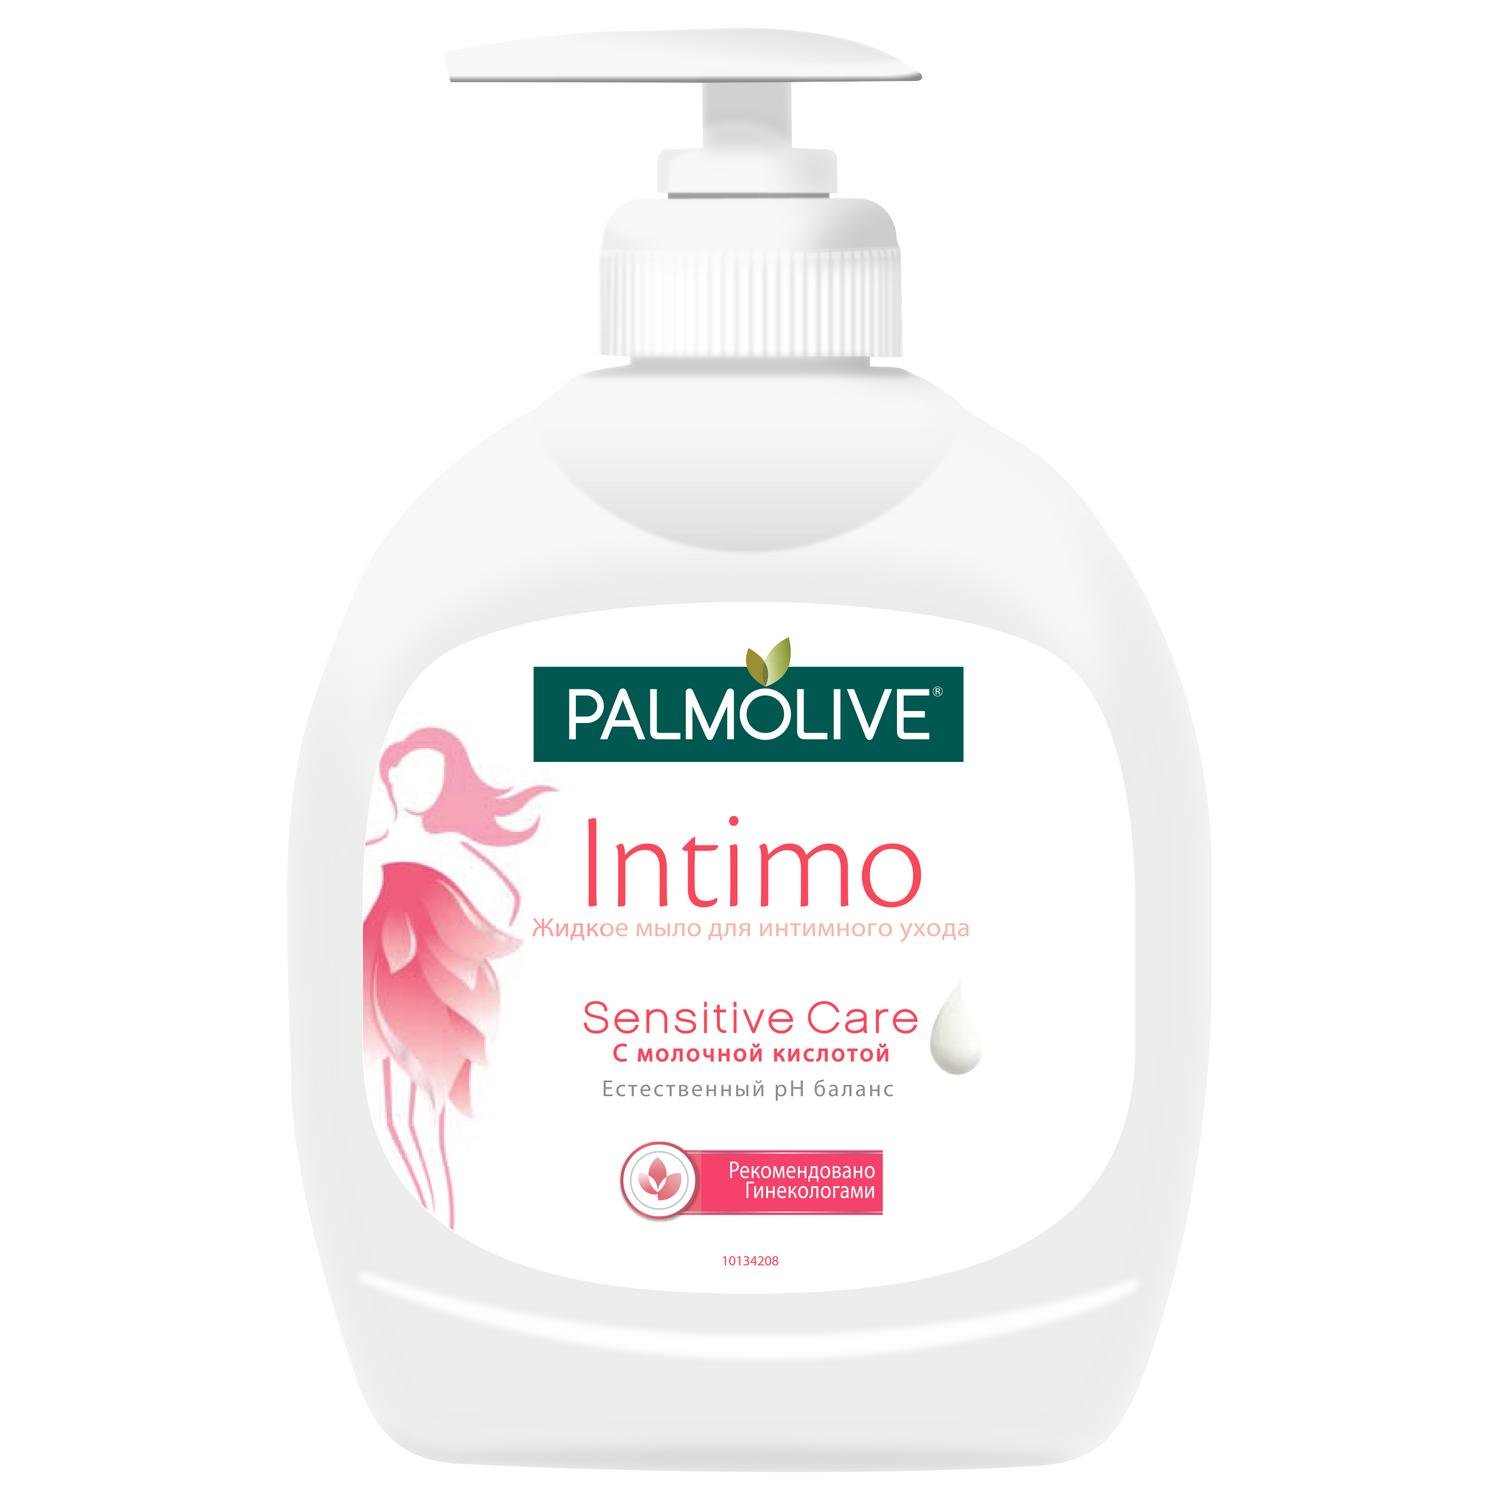 Мыло жидкое Palmolive Intimo Sensitive Care с молочной кислотой для интимного ухода 300 мл